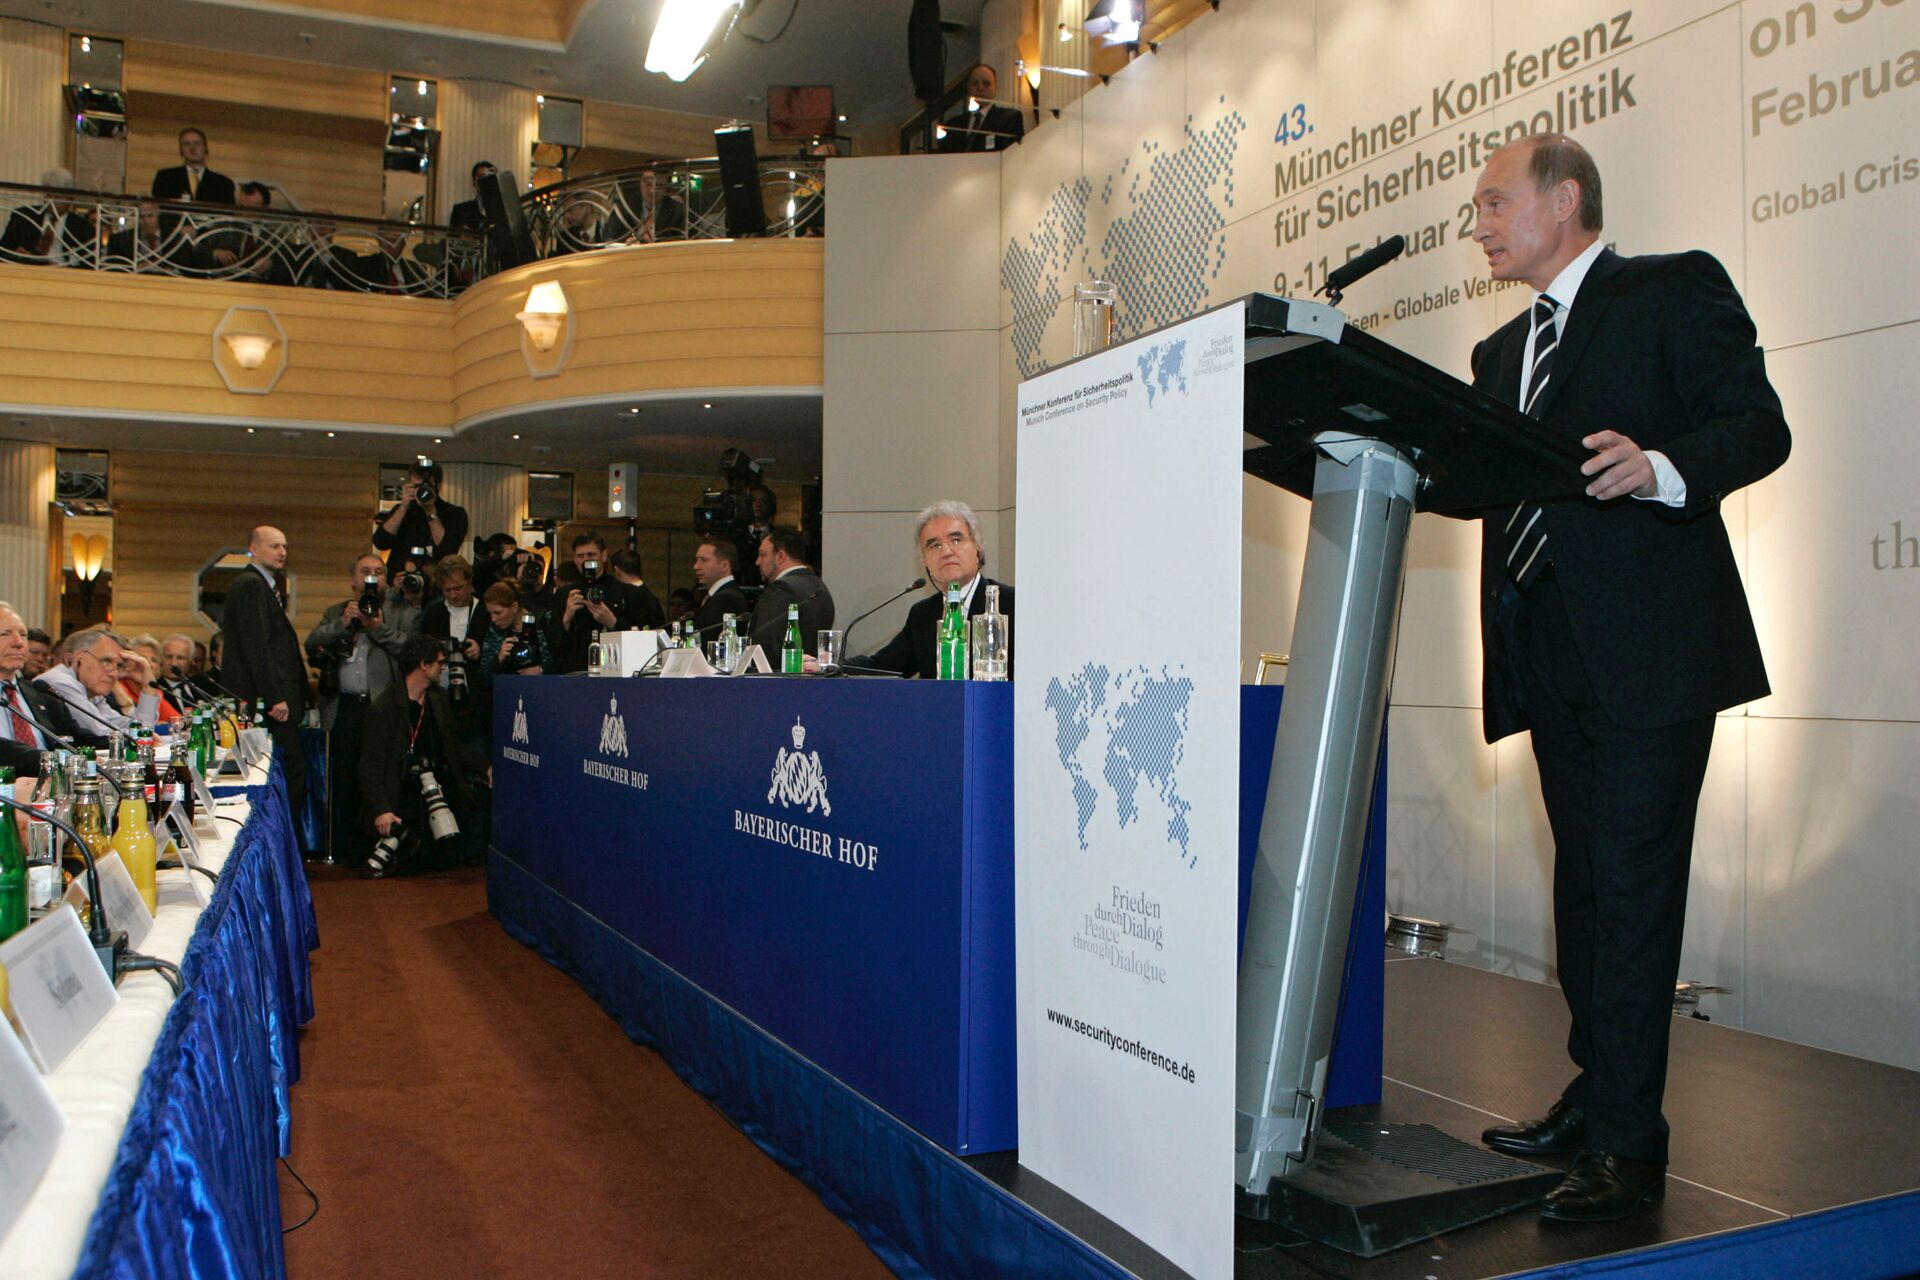 Президент России Владимир Путин во время выступления на 43-й Мюнхенской конференции по вопросам политики безопасности. 10 февраля 2007  - ИноСМИ, 1920, 17.06.2021